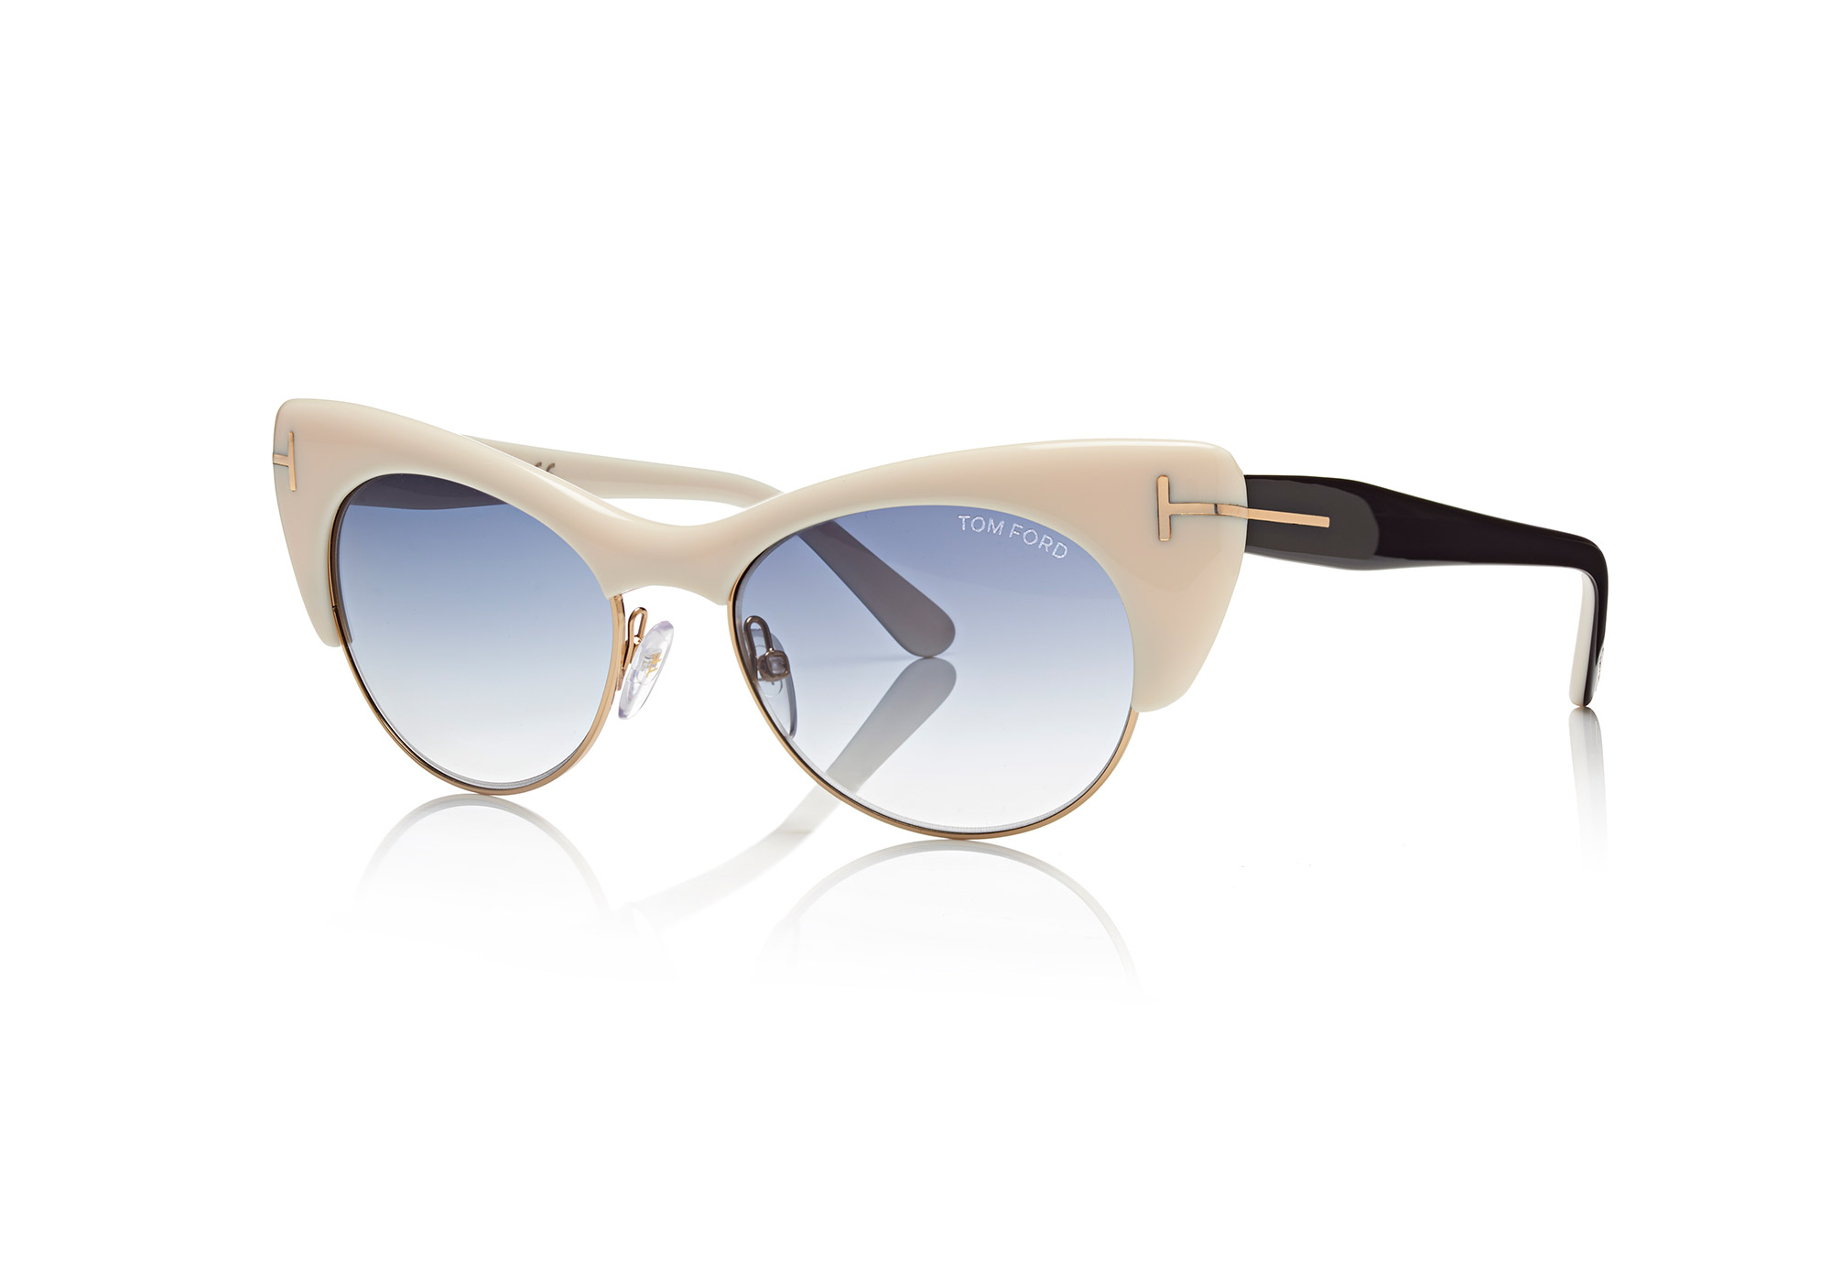 Marcolin Eyewear sunglasses Tom Ford FW 15 16 (3)